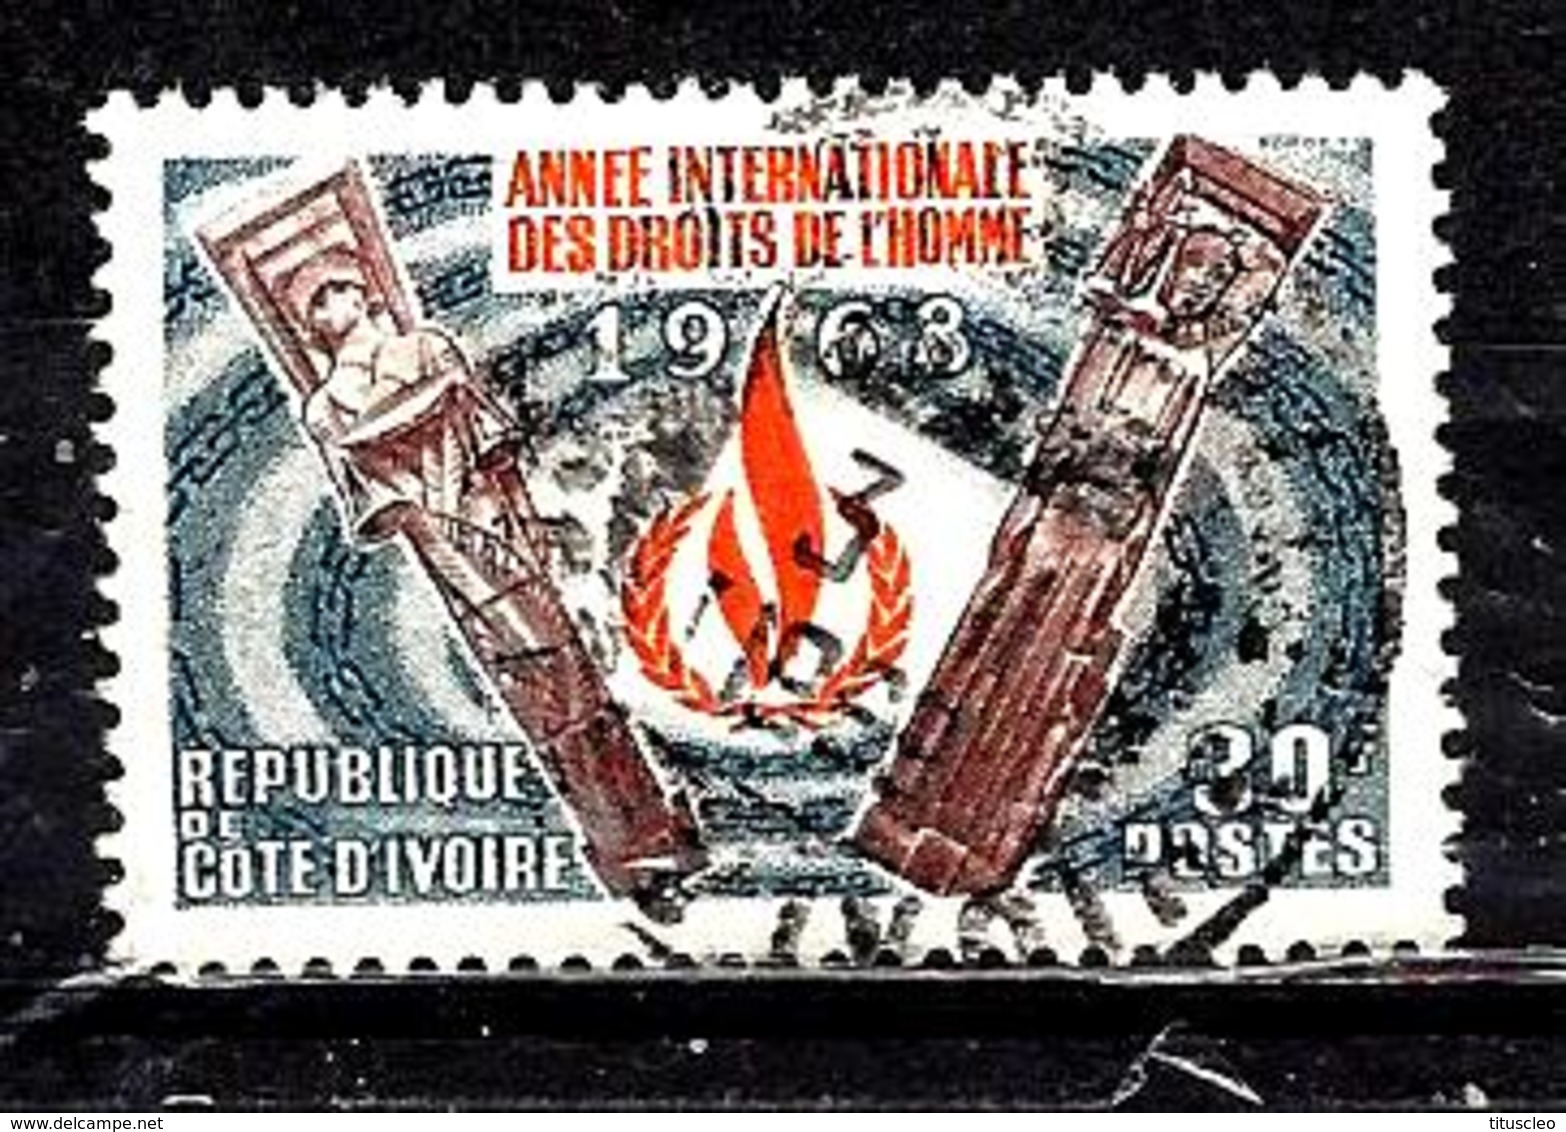 COTE D'IVOIRE 283° 30f Gris, Brun-lilas Et Orange Année Internationale Des Droits De L'homme (10% De La Cote + 0,25) - Côte D'Ivoire (1960-...)